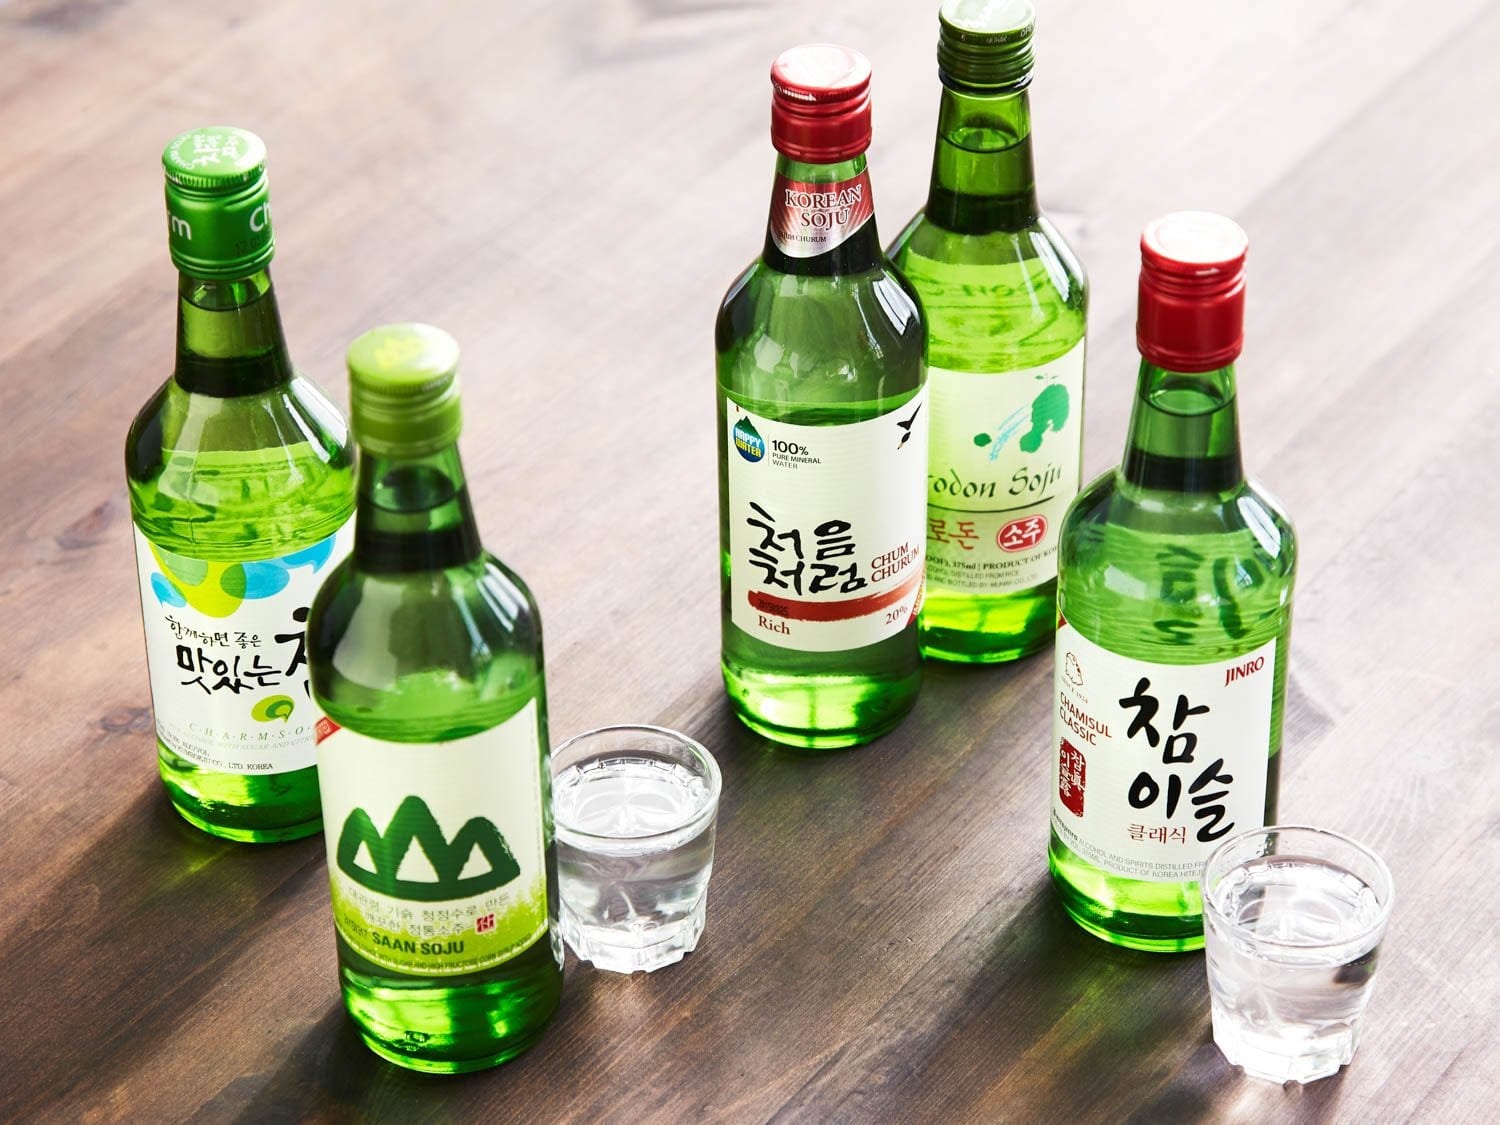  Rượu soju là thức uống không thể thiếu khi đi ăn thịt nướng hay món cay